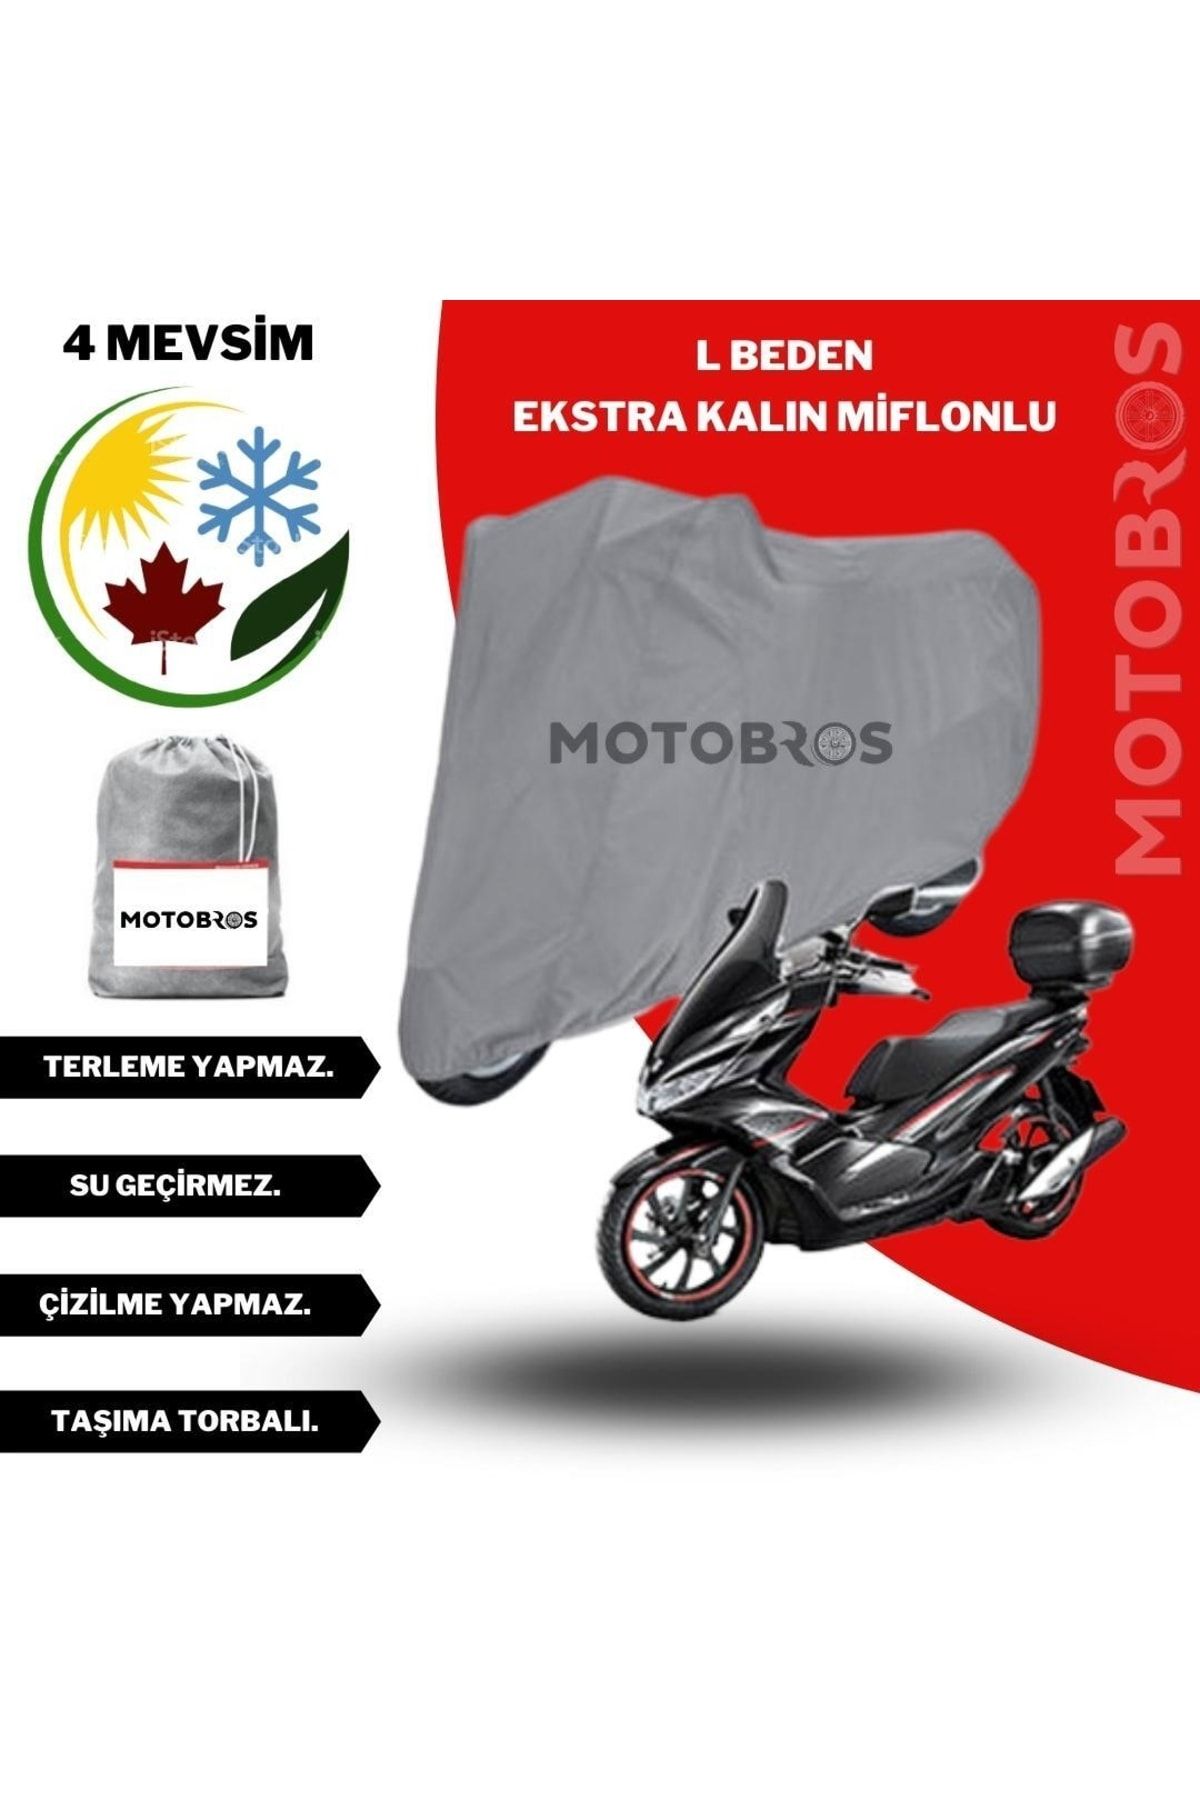 Motobros Motor Brandası Motosiklet Brandası L Beden En (EKSTRA KALIN)